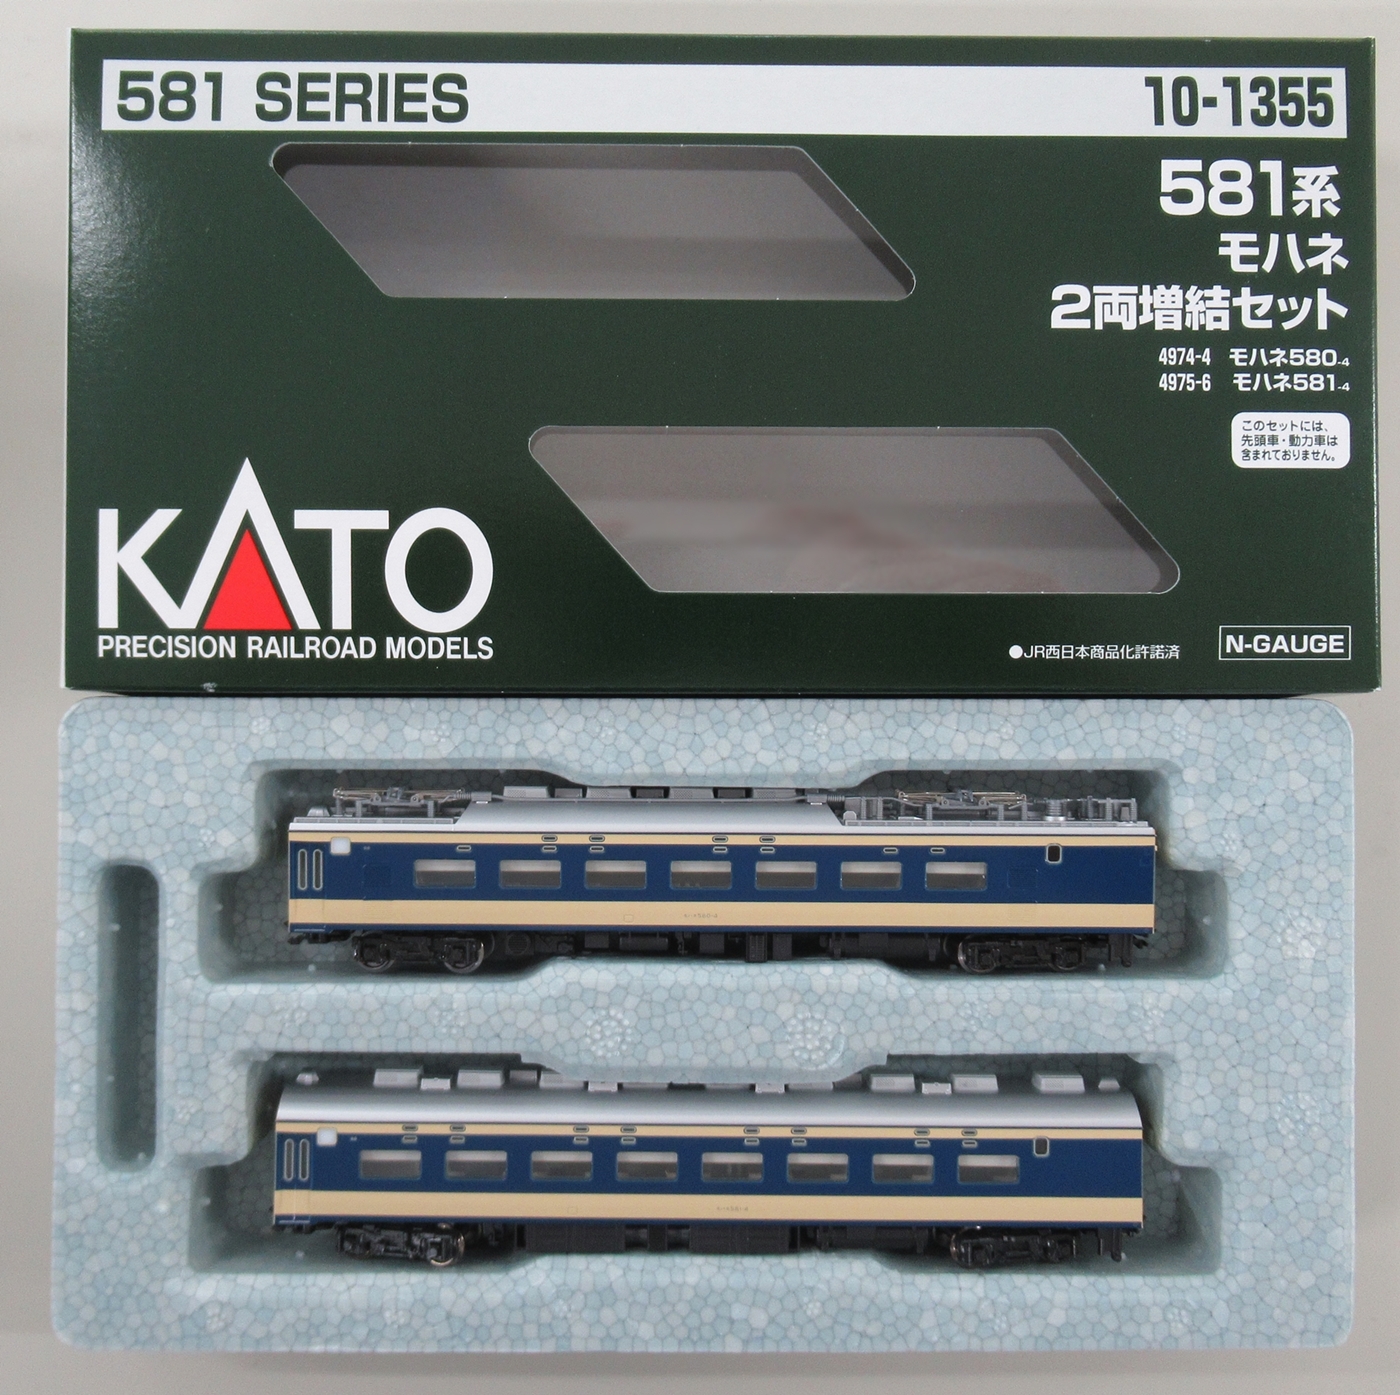 Nゲージ 581系 モハネ2両増結セット 鉄道模型 電車 カトー KATO 10